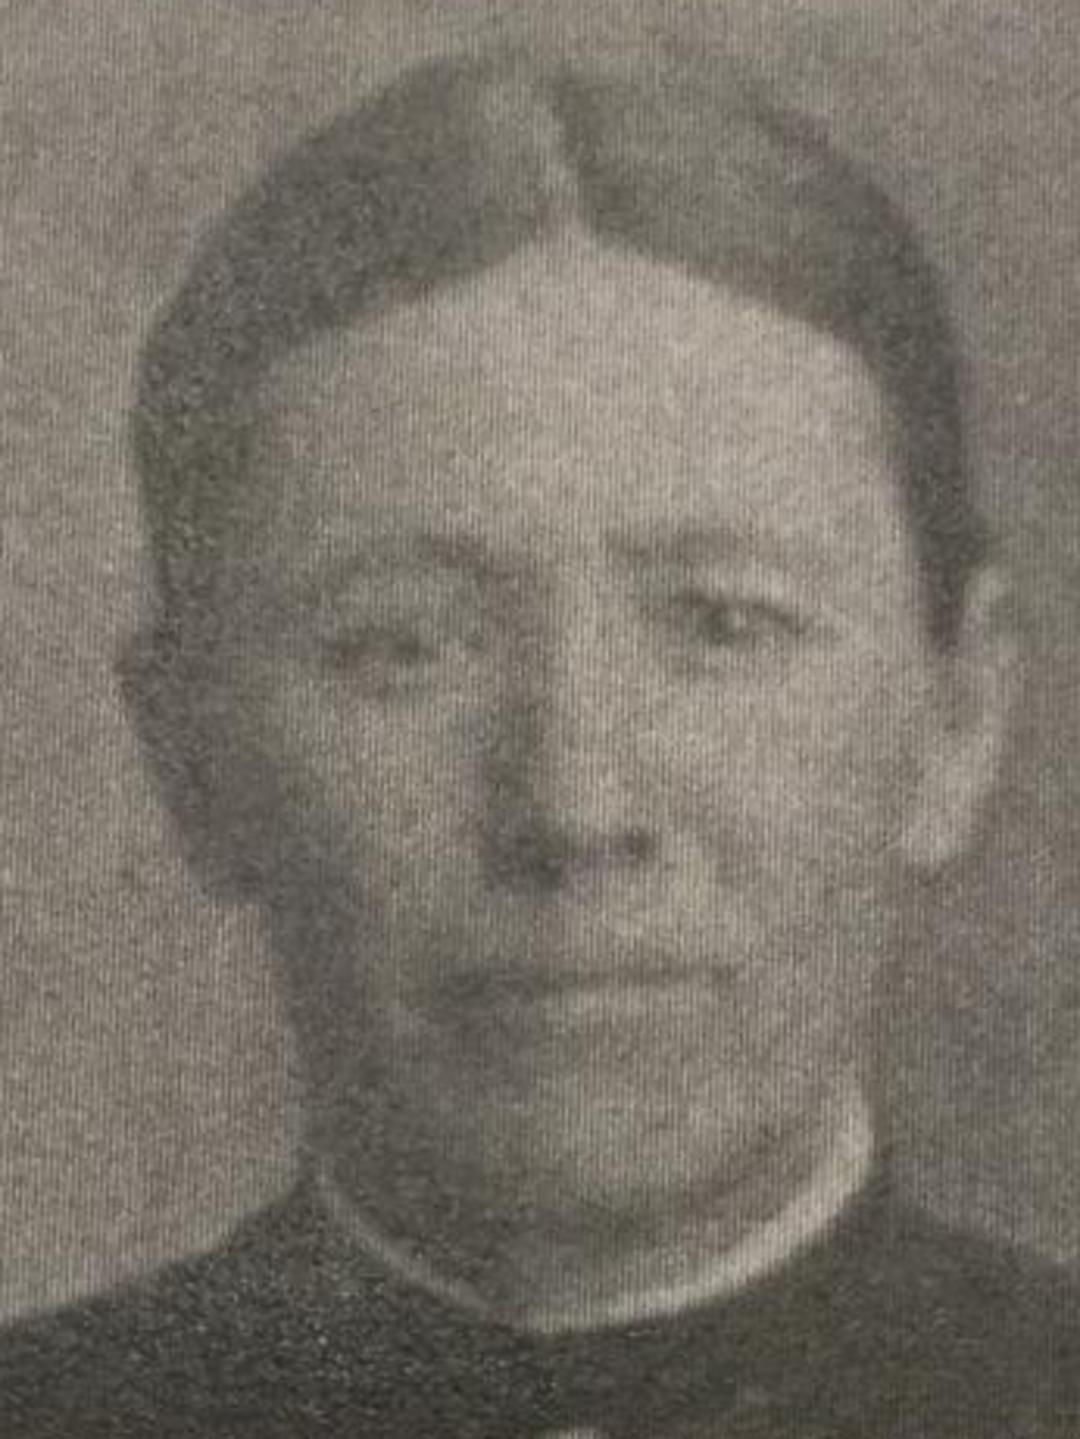 Sarah Elizabeth Lewis (1843 - 1922) Profile